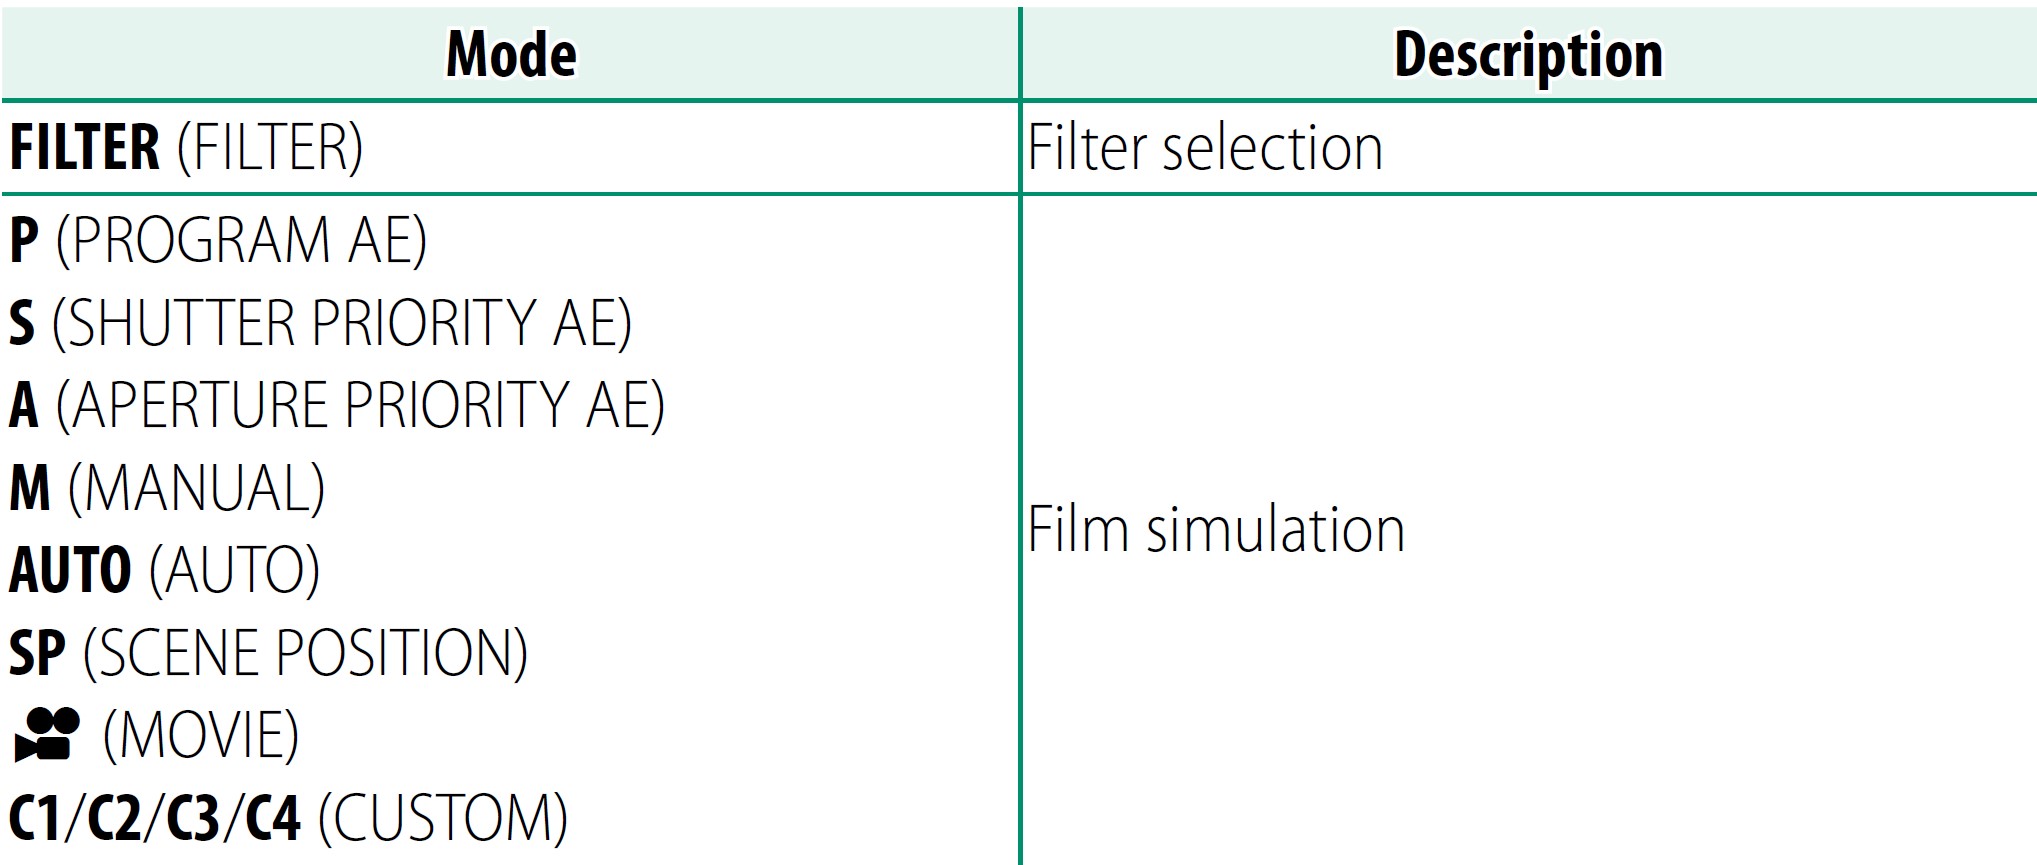 Fujifilm-X-S10-Mirrorless-Digital-Camera-Owner-Manual-12